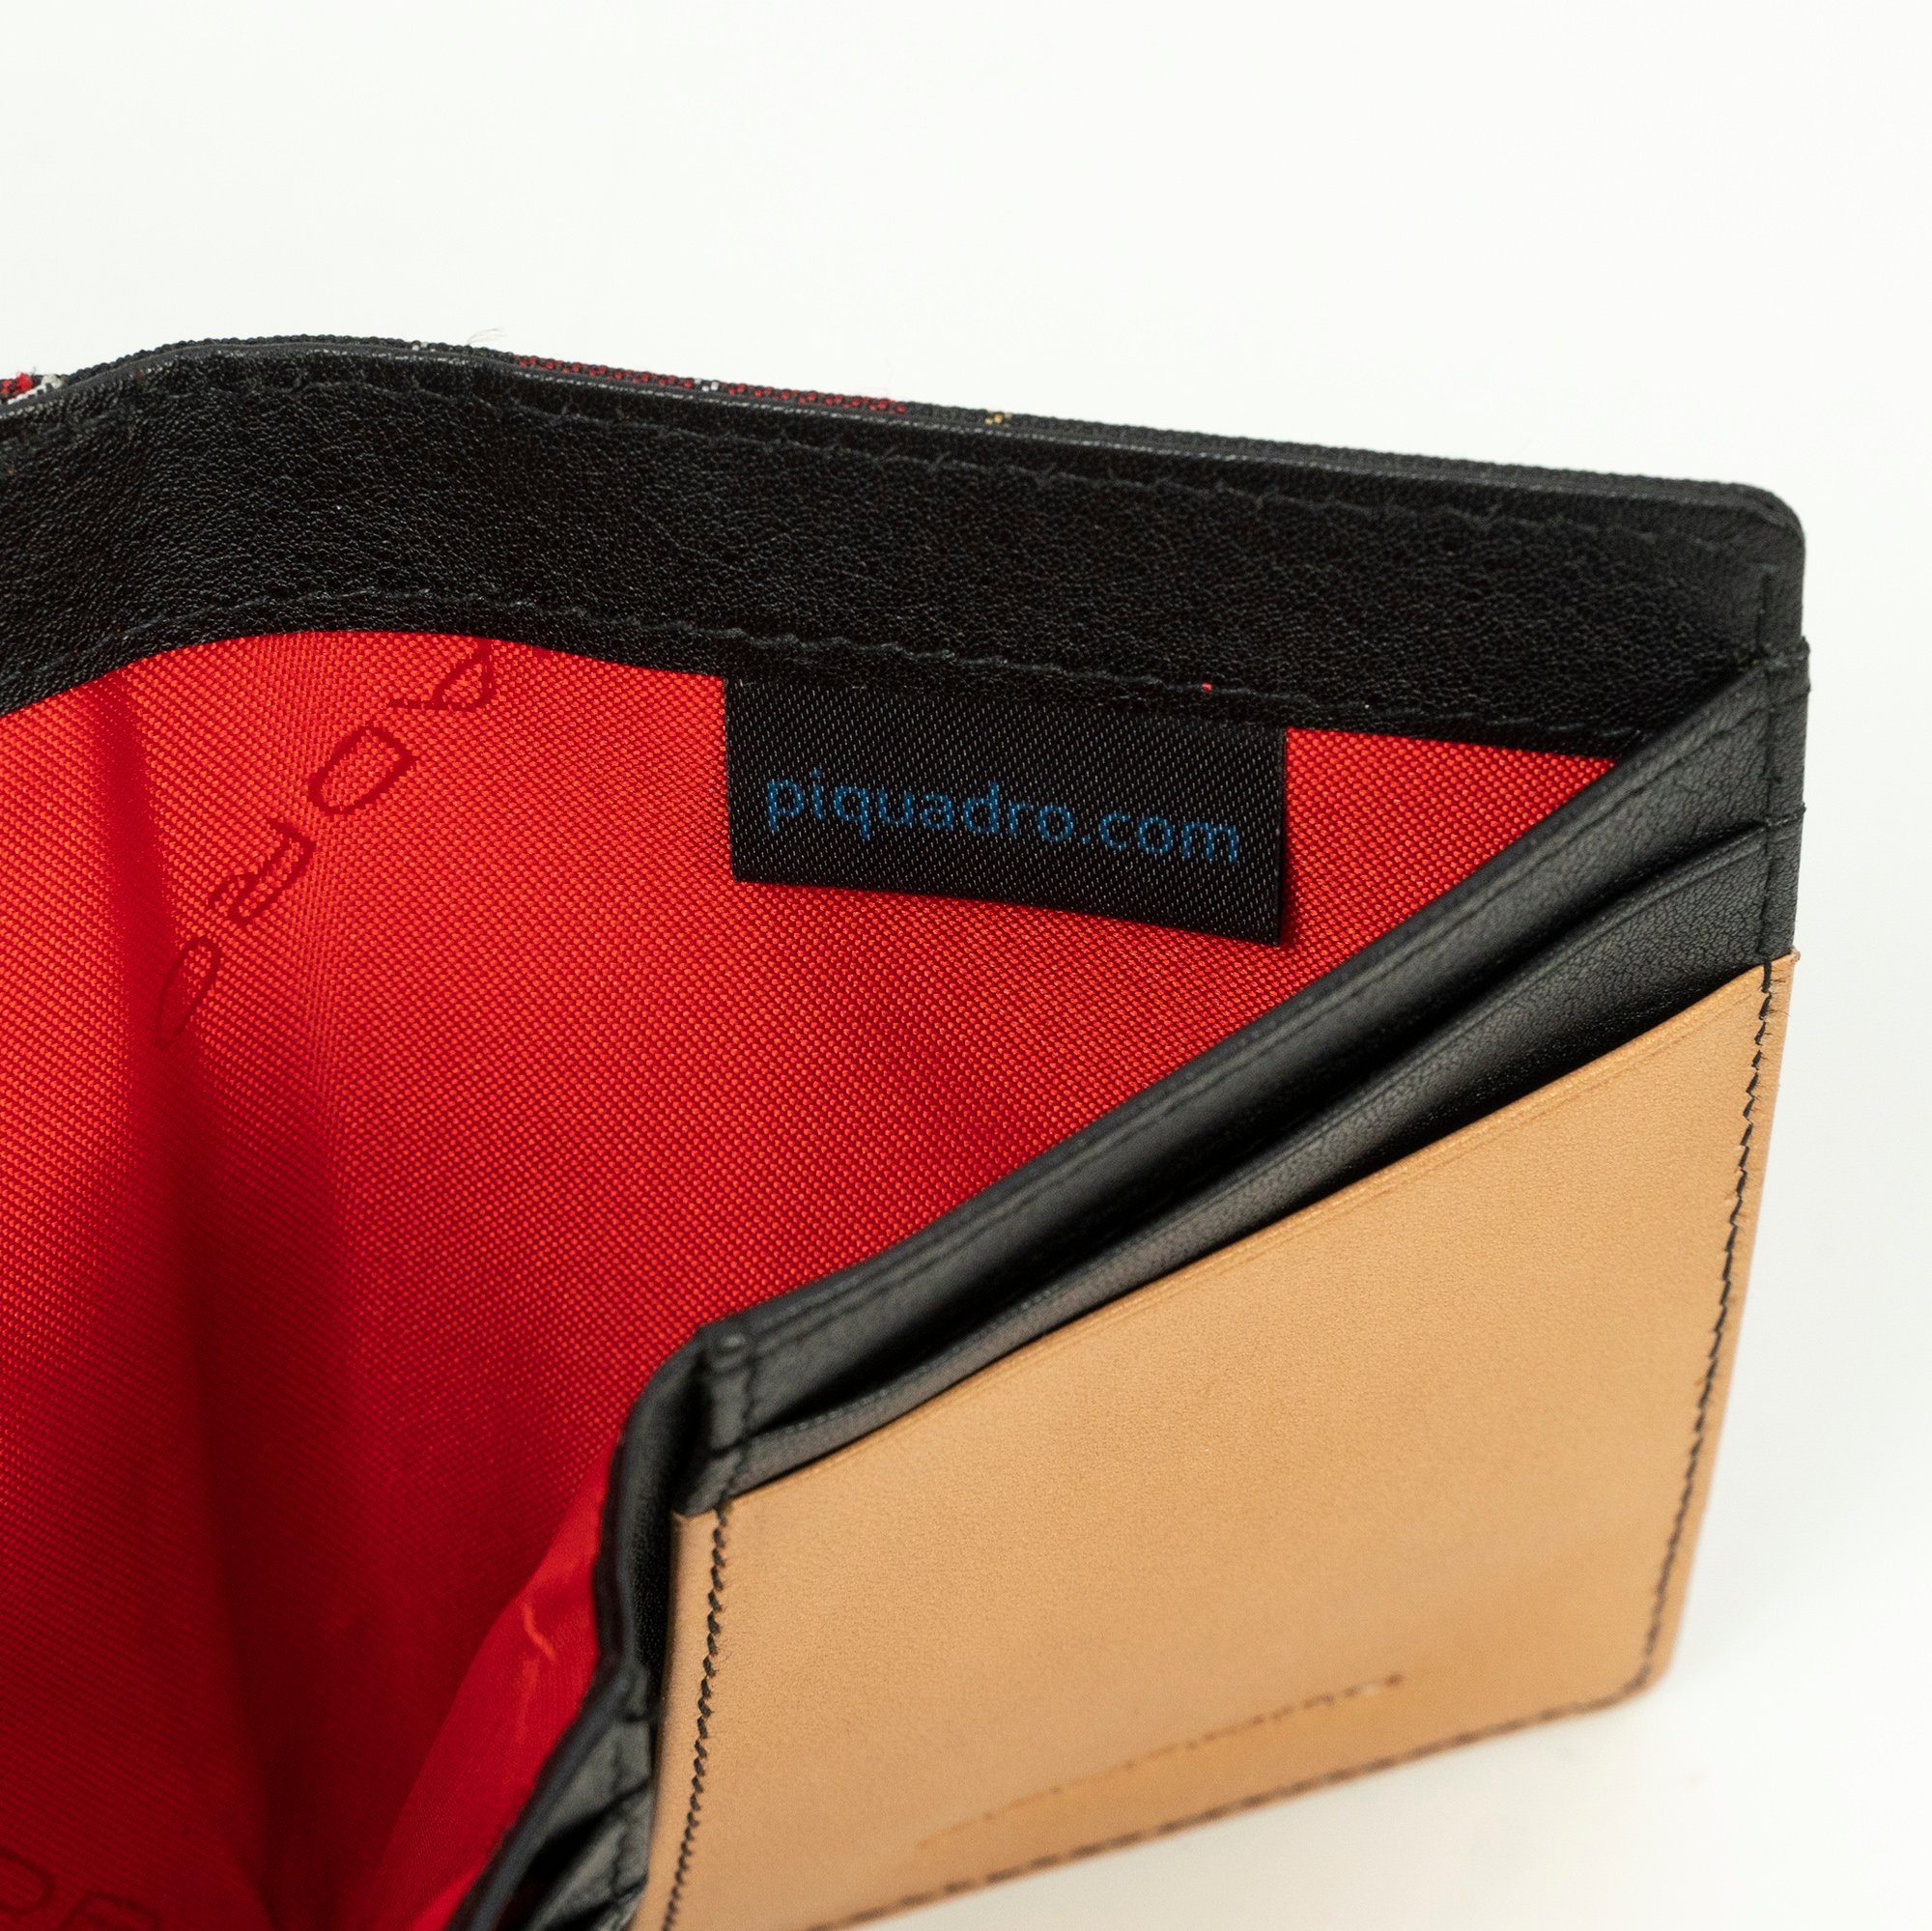 Brieftasche Piquadro Herren, Farbe: PU4455BL-CHECK, Rot